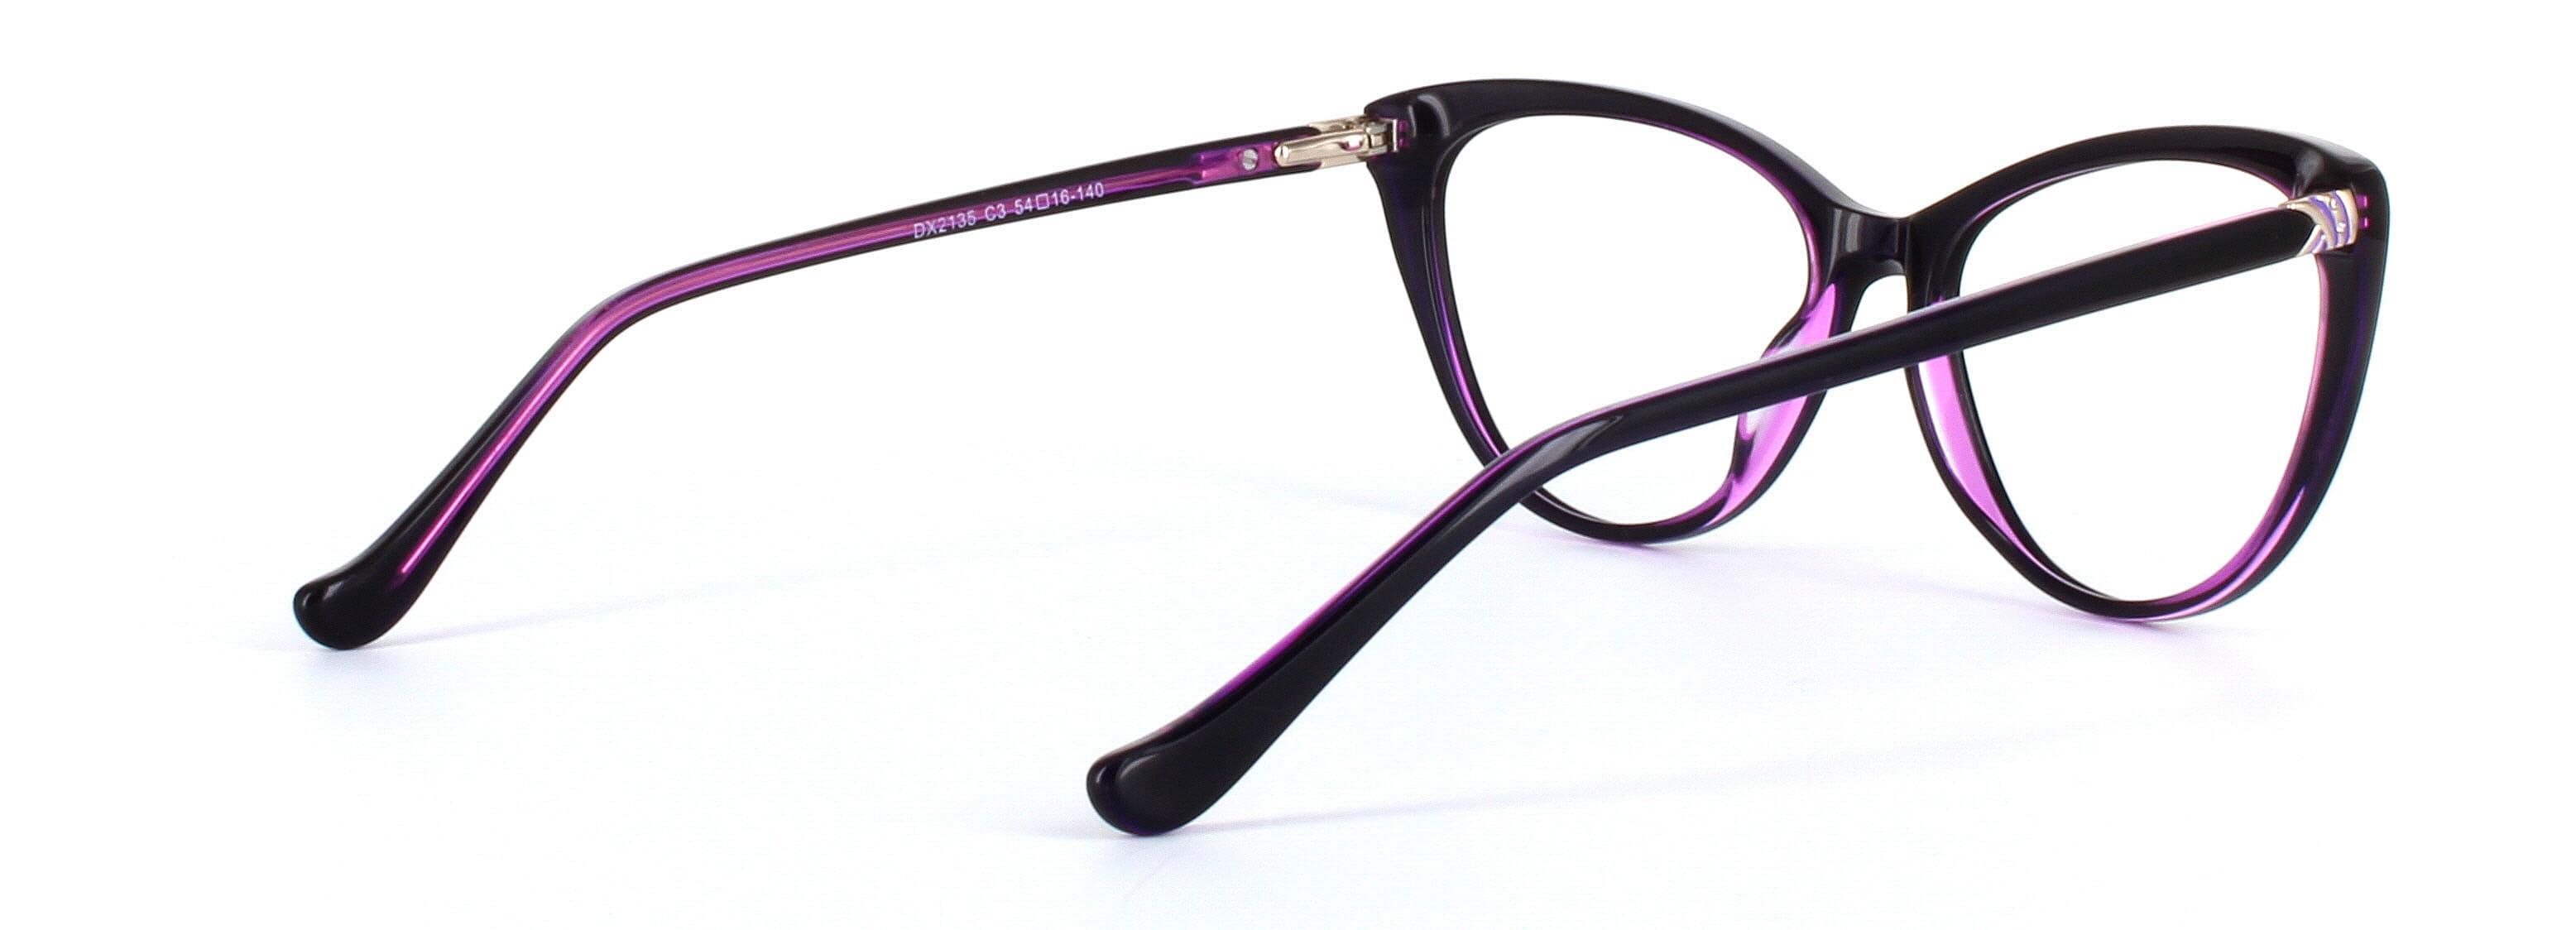 Lydia Purple Full Rim Cat Eye Acetate Glasses - Image View 4